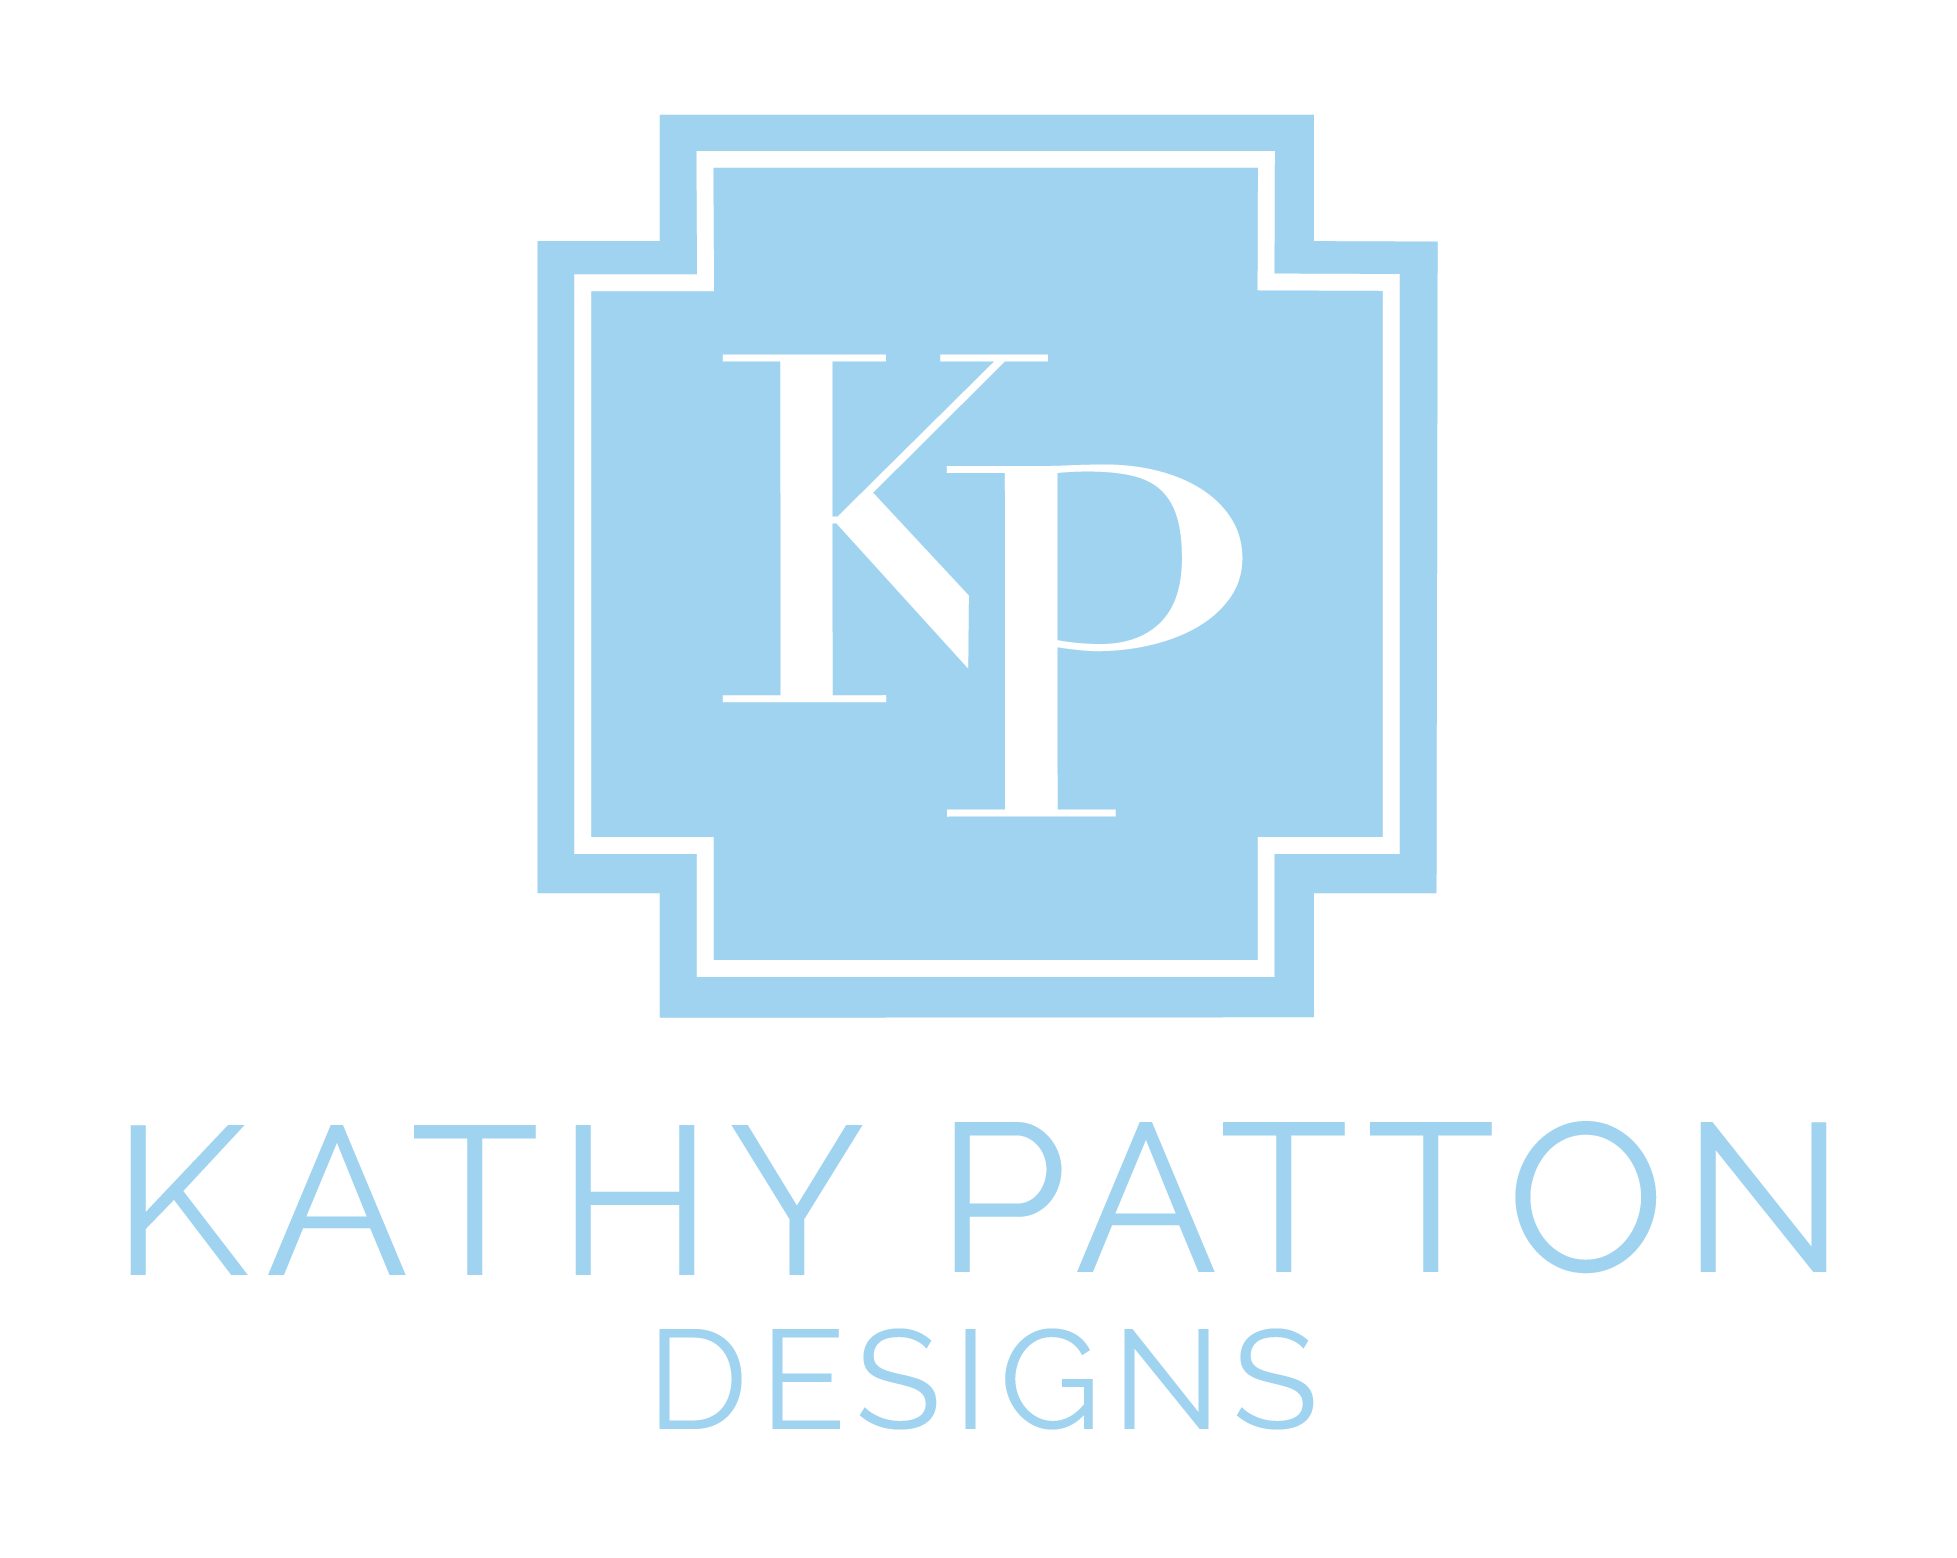 Kathy Patton Designs